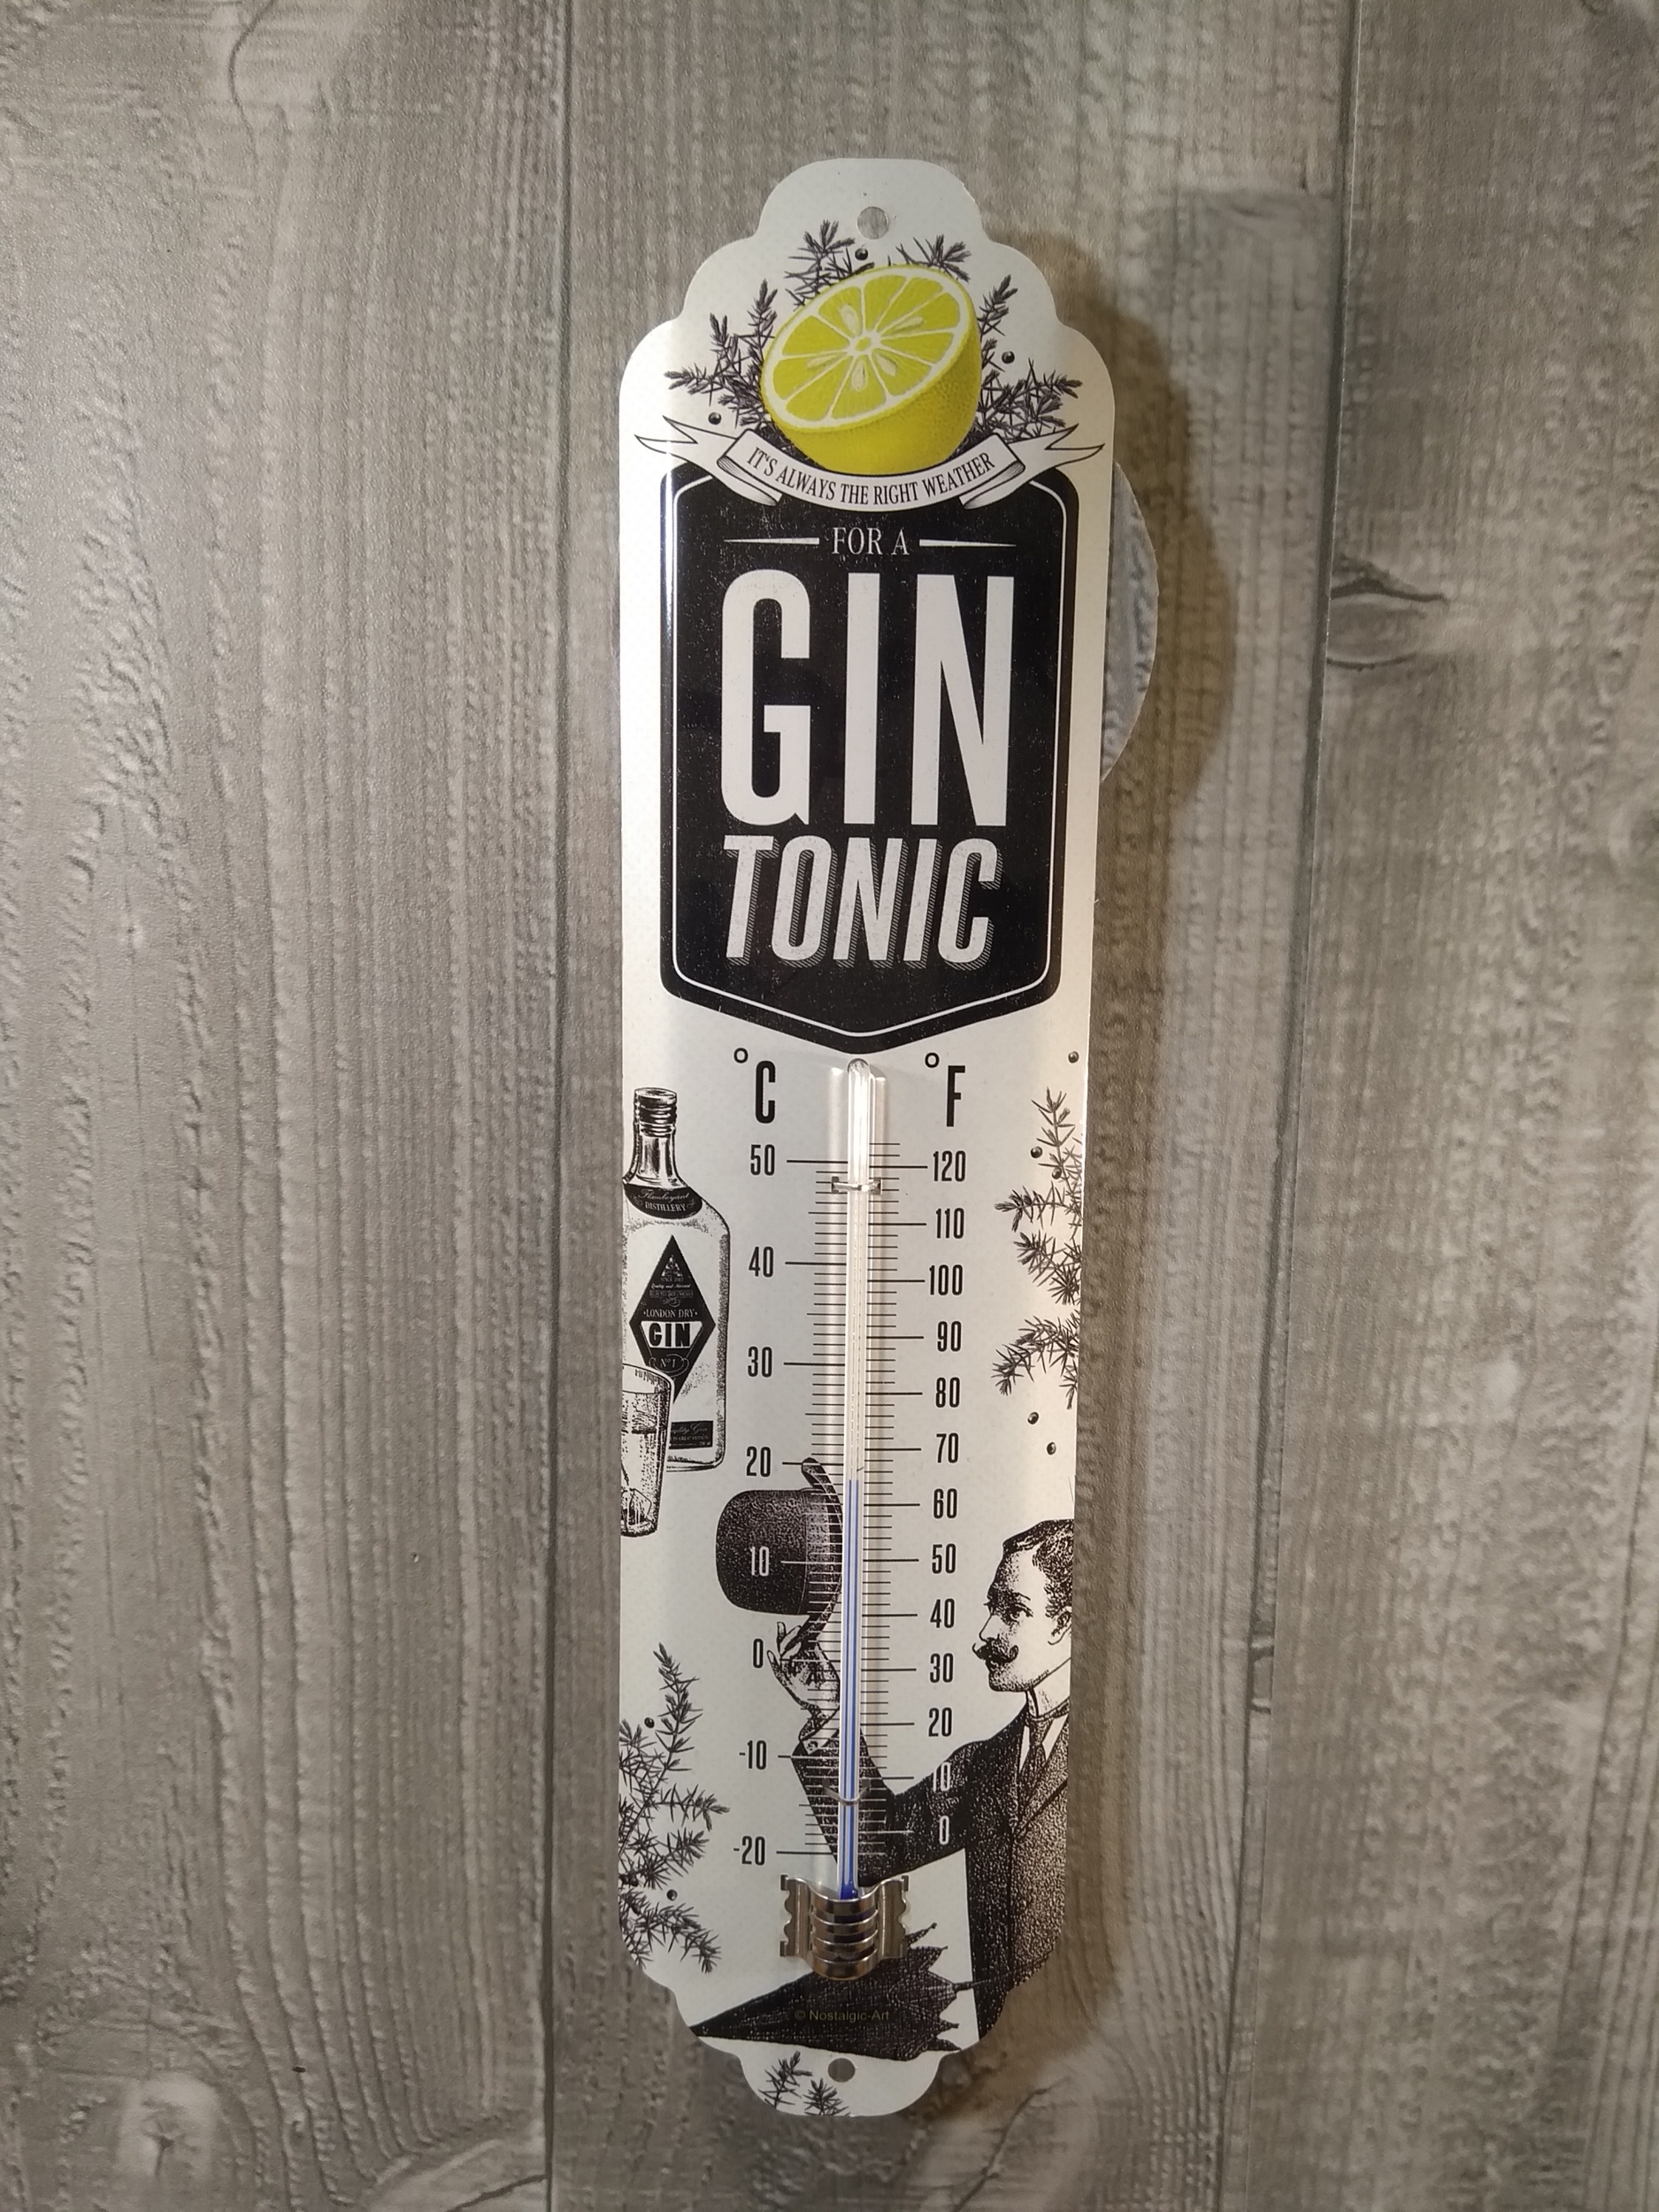 thermomètre métal publicitaire gin tonic rétro vintage